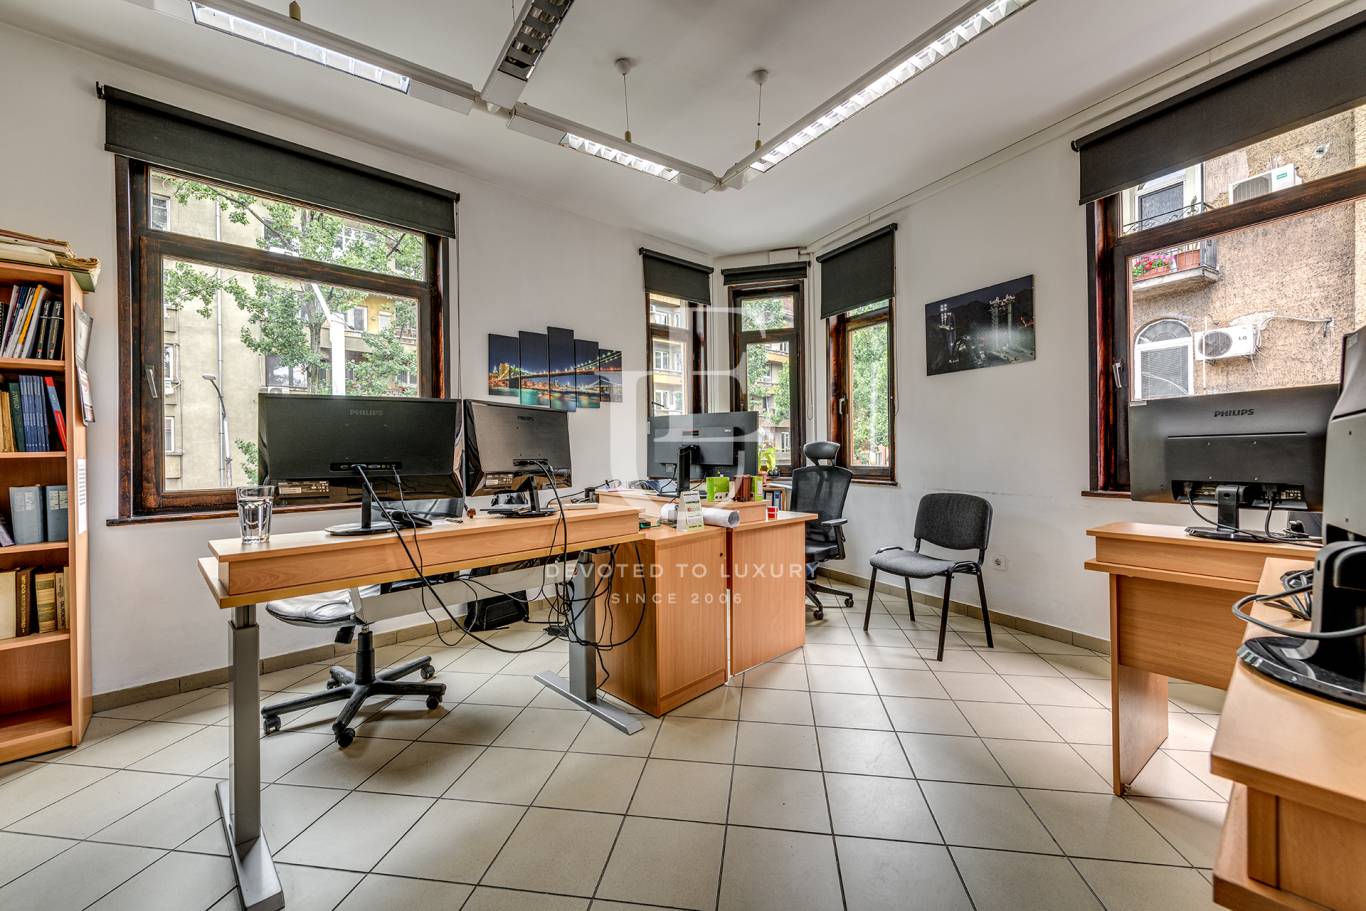 Офис под наем в София, Център - код на имота: K21375 - image 1